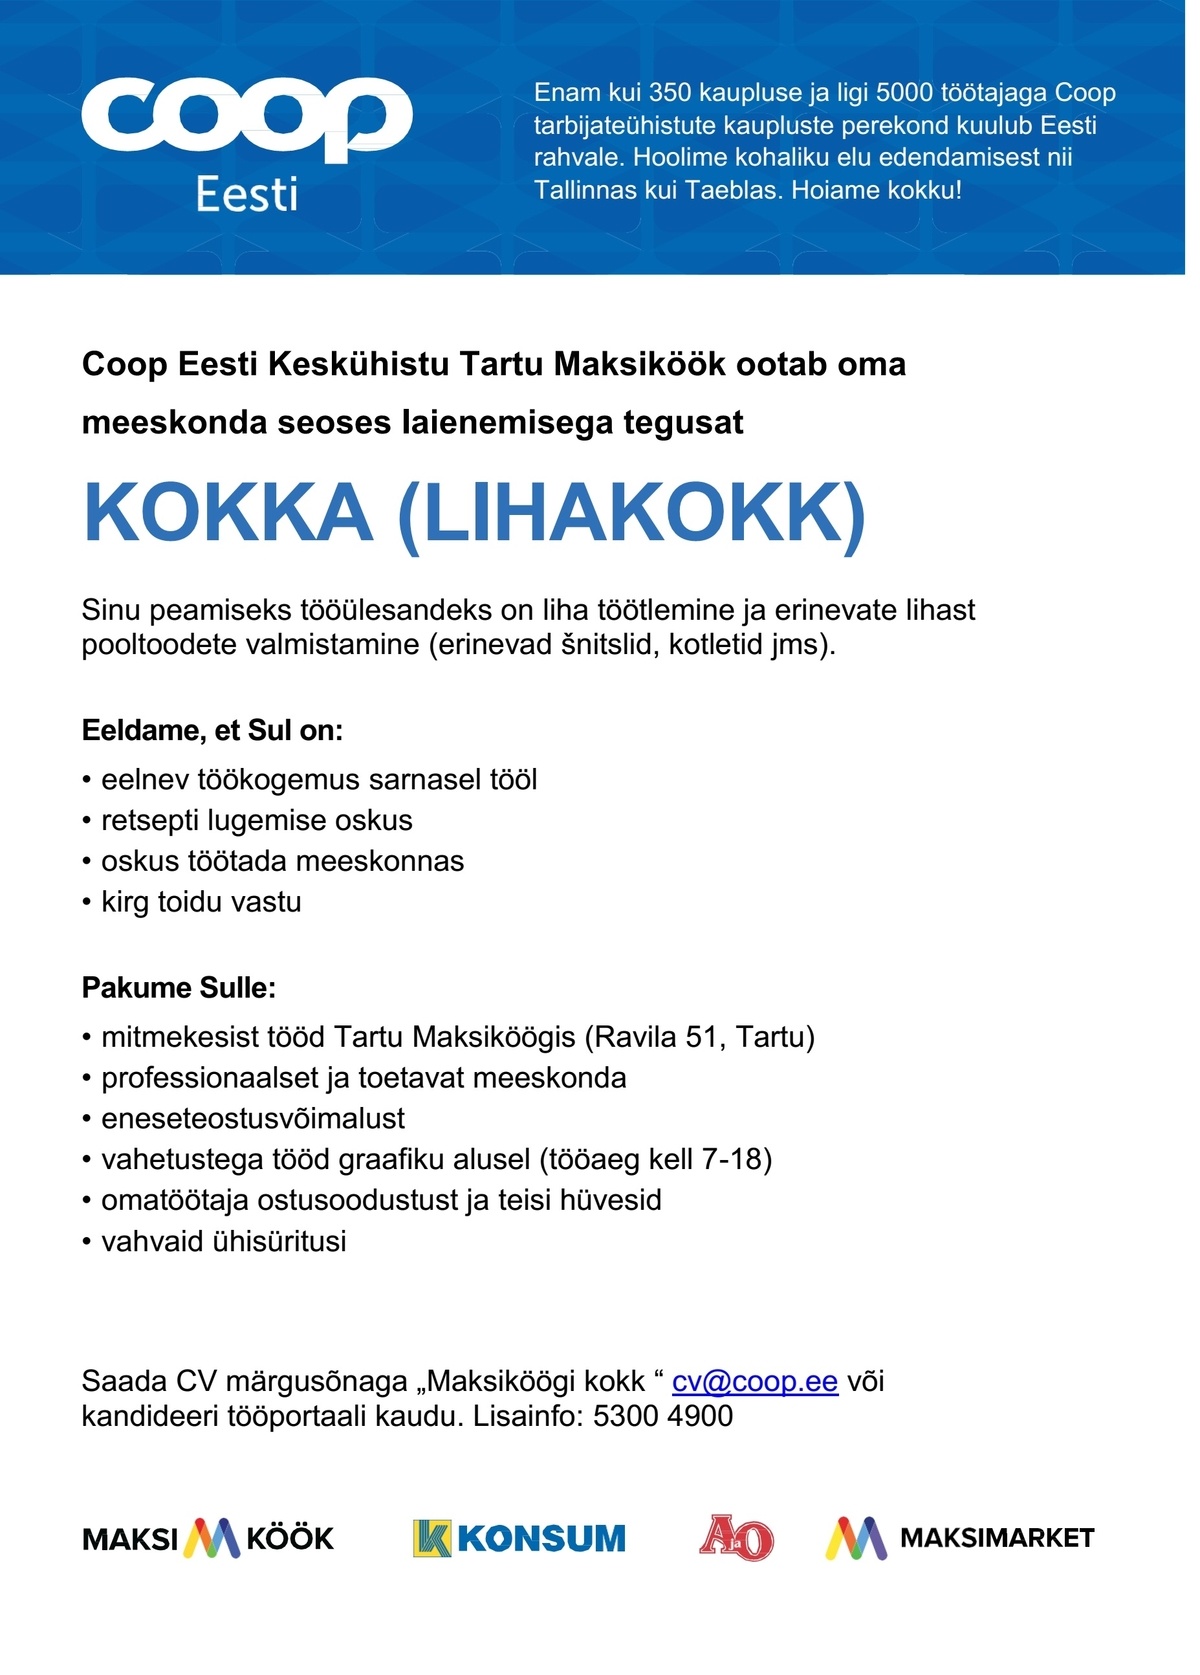 Coop Eesti Keskühistu Lihakokk (Maksiköök)